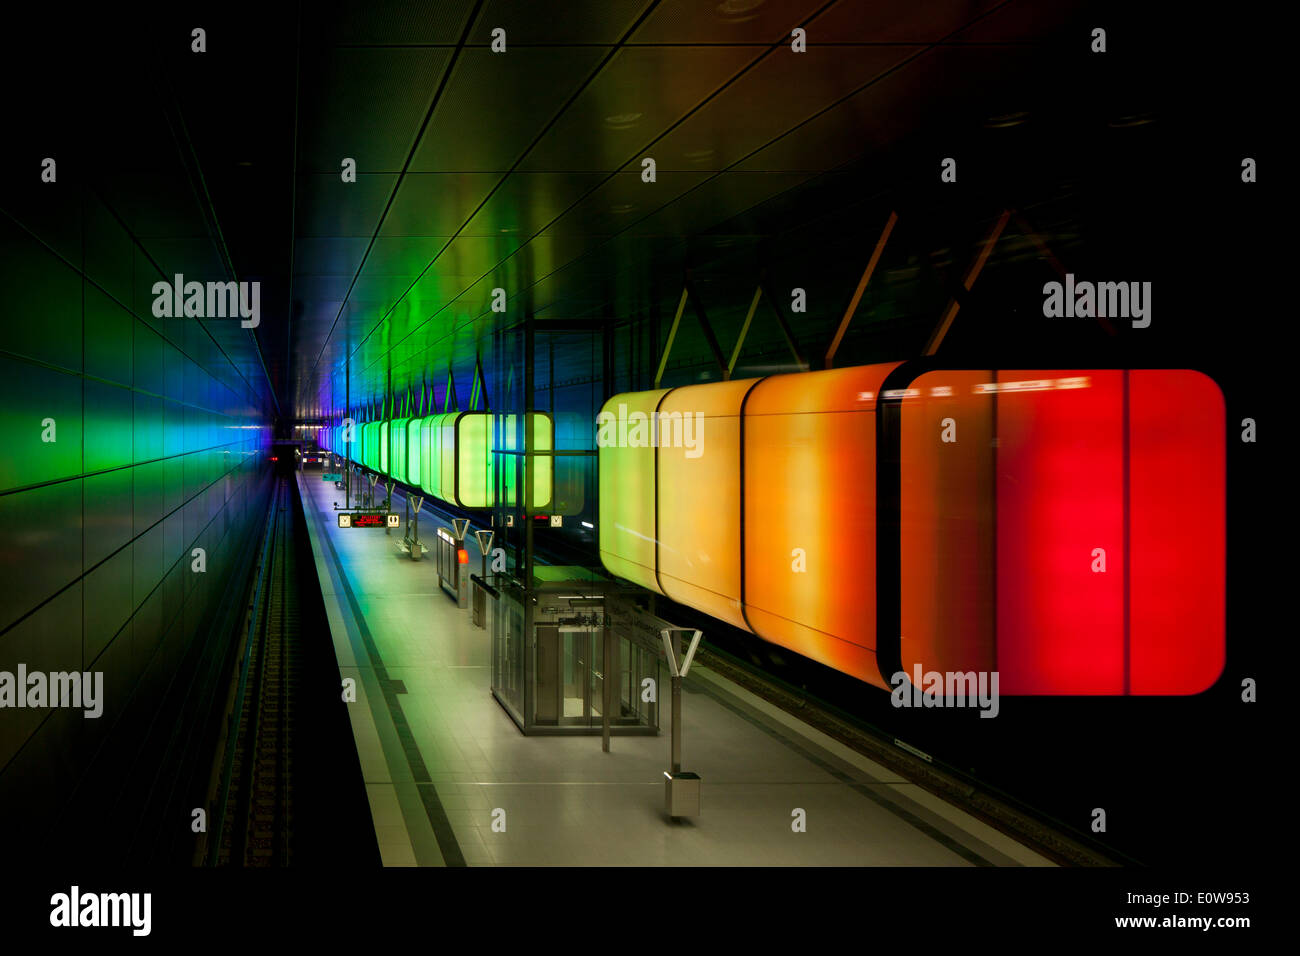 Installazione delle luci dell'U-Bahn HafenCity Universität stazione della metropolitana, U4 linea metropolitana, HafenCity di Amburgo, Germania Foto Stock